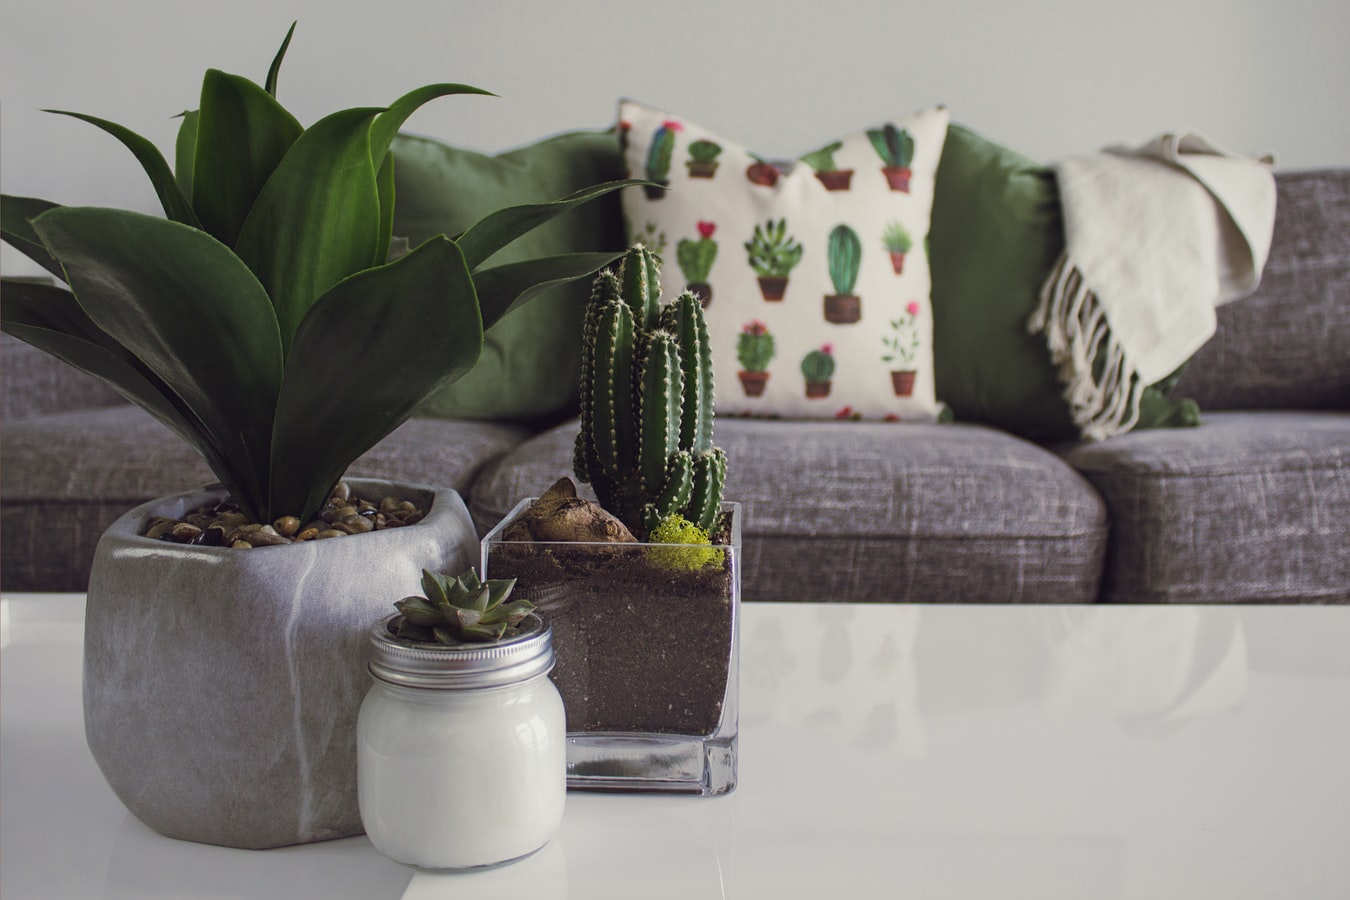 livingroom, sofa, plants on table